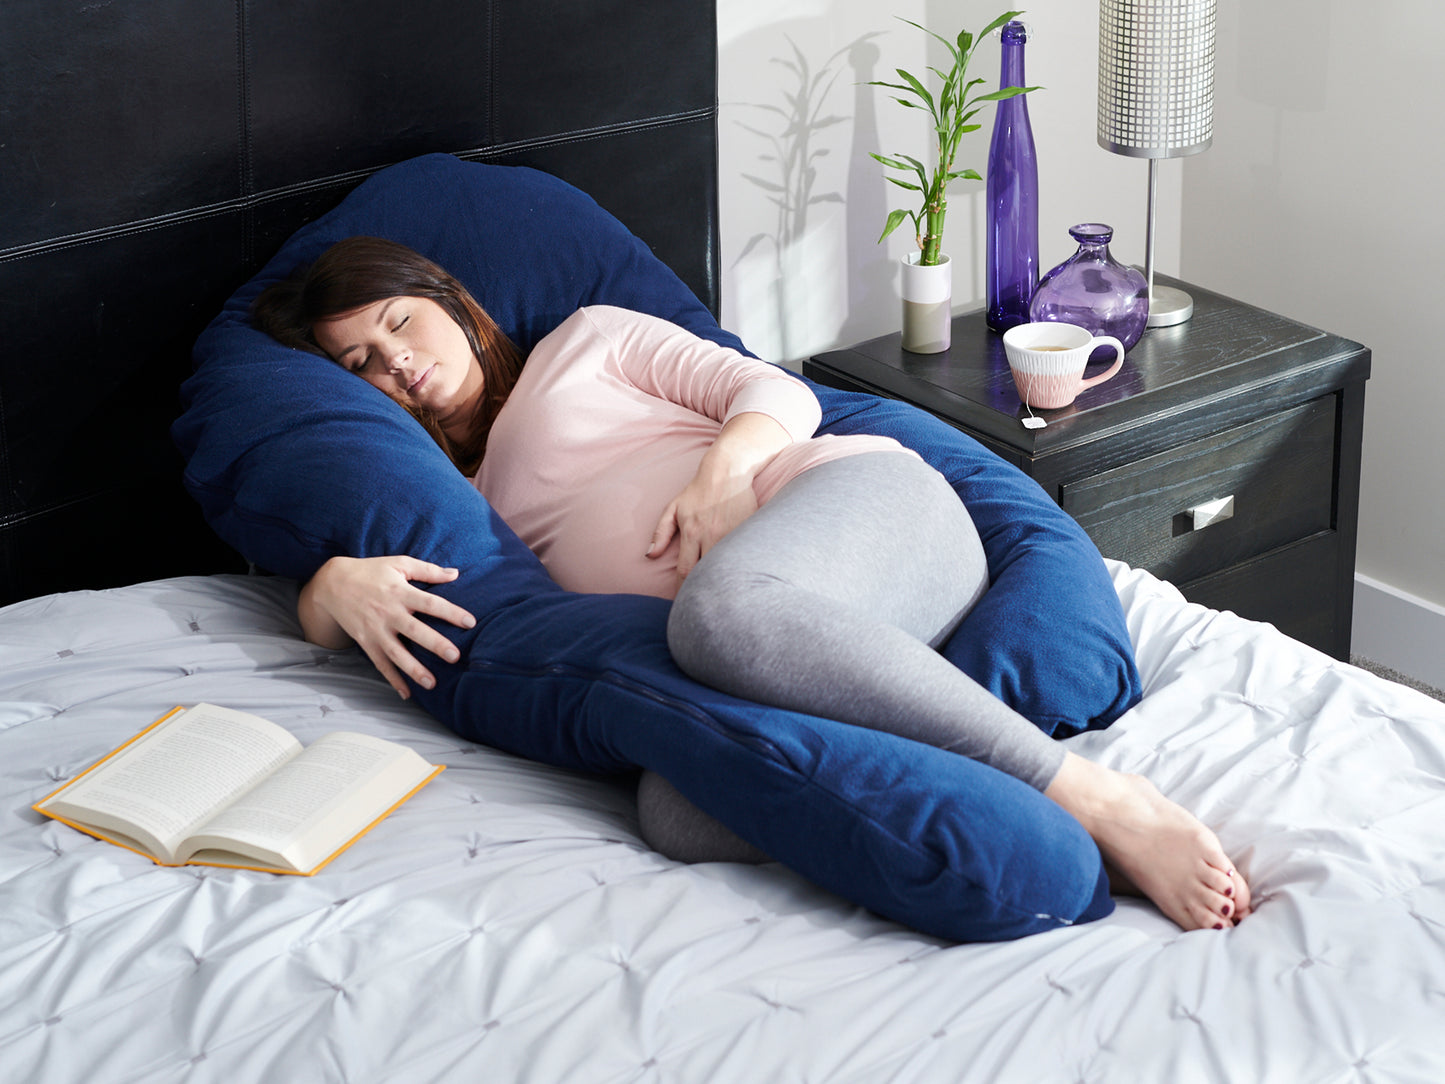 Comfort-U Full Body Pillow